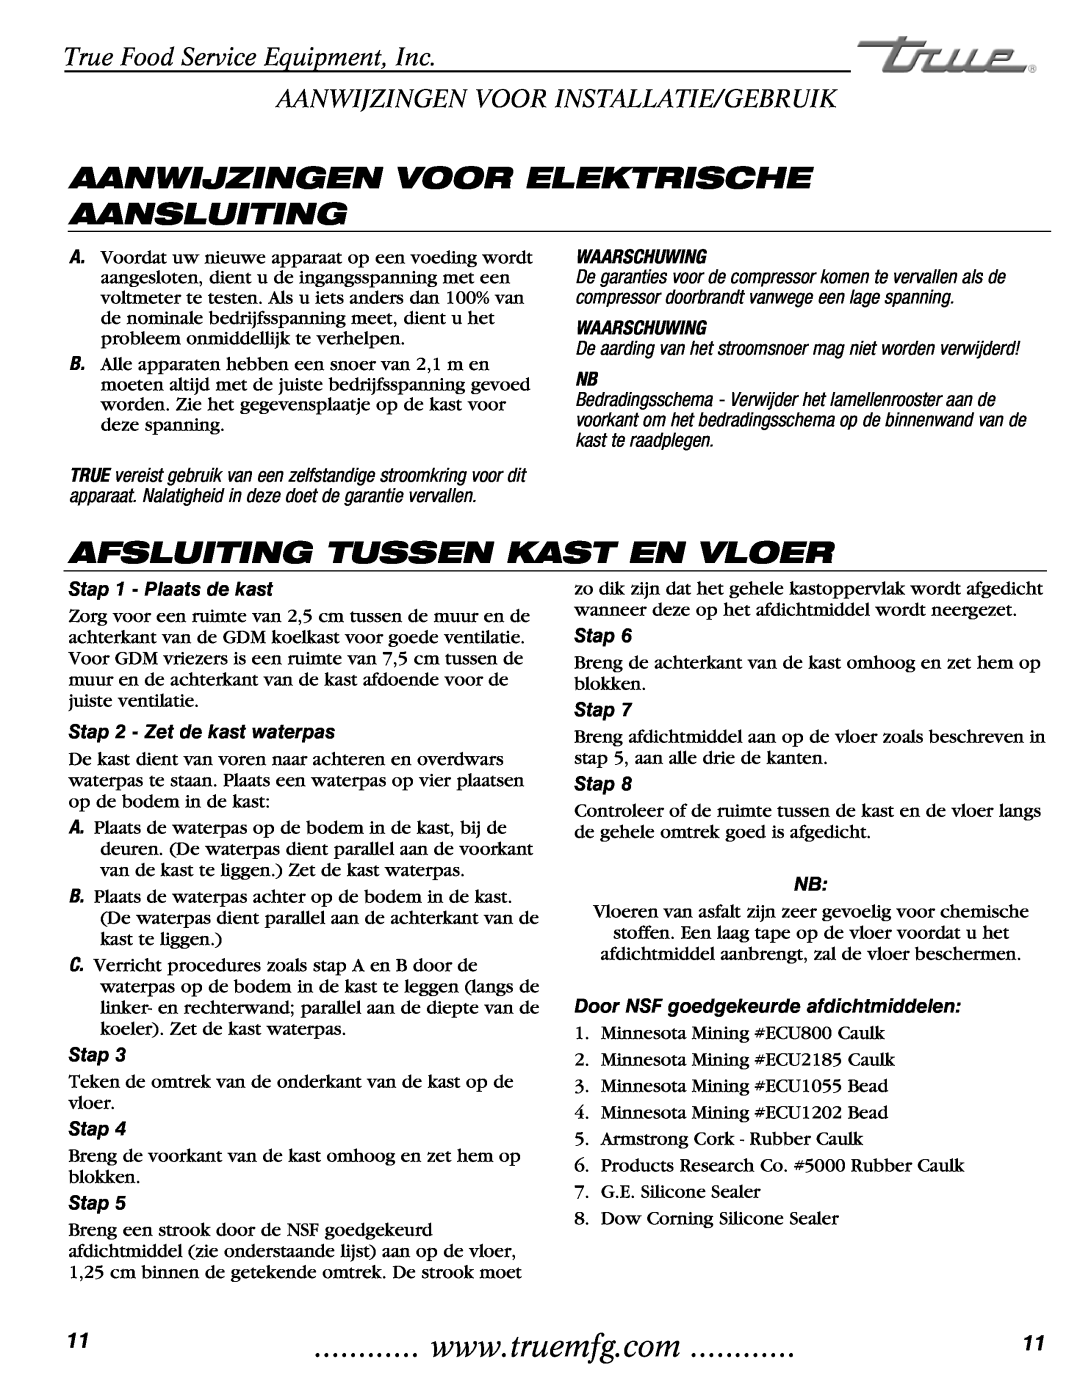 True Manufacturing Company GDM-49 Aanwijzingen Voor Elektrische Aansluiting, Afsluiting Tussen Kast En Vloer, Waarschuwing 